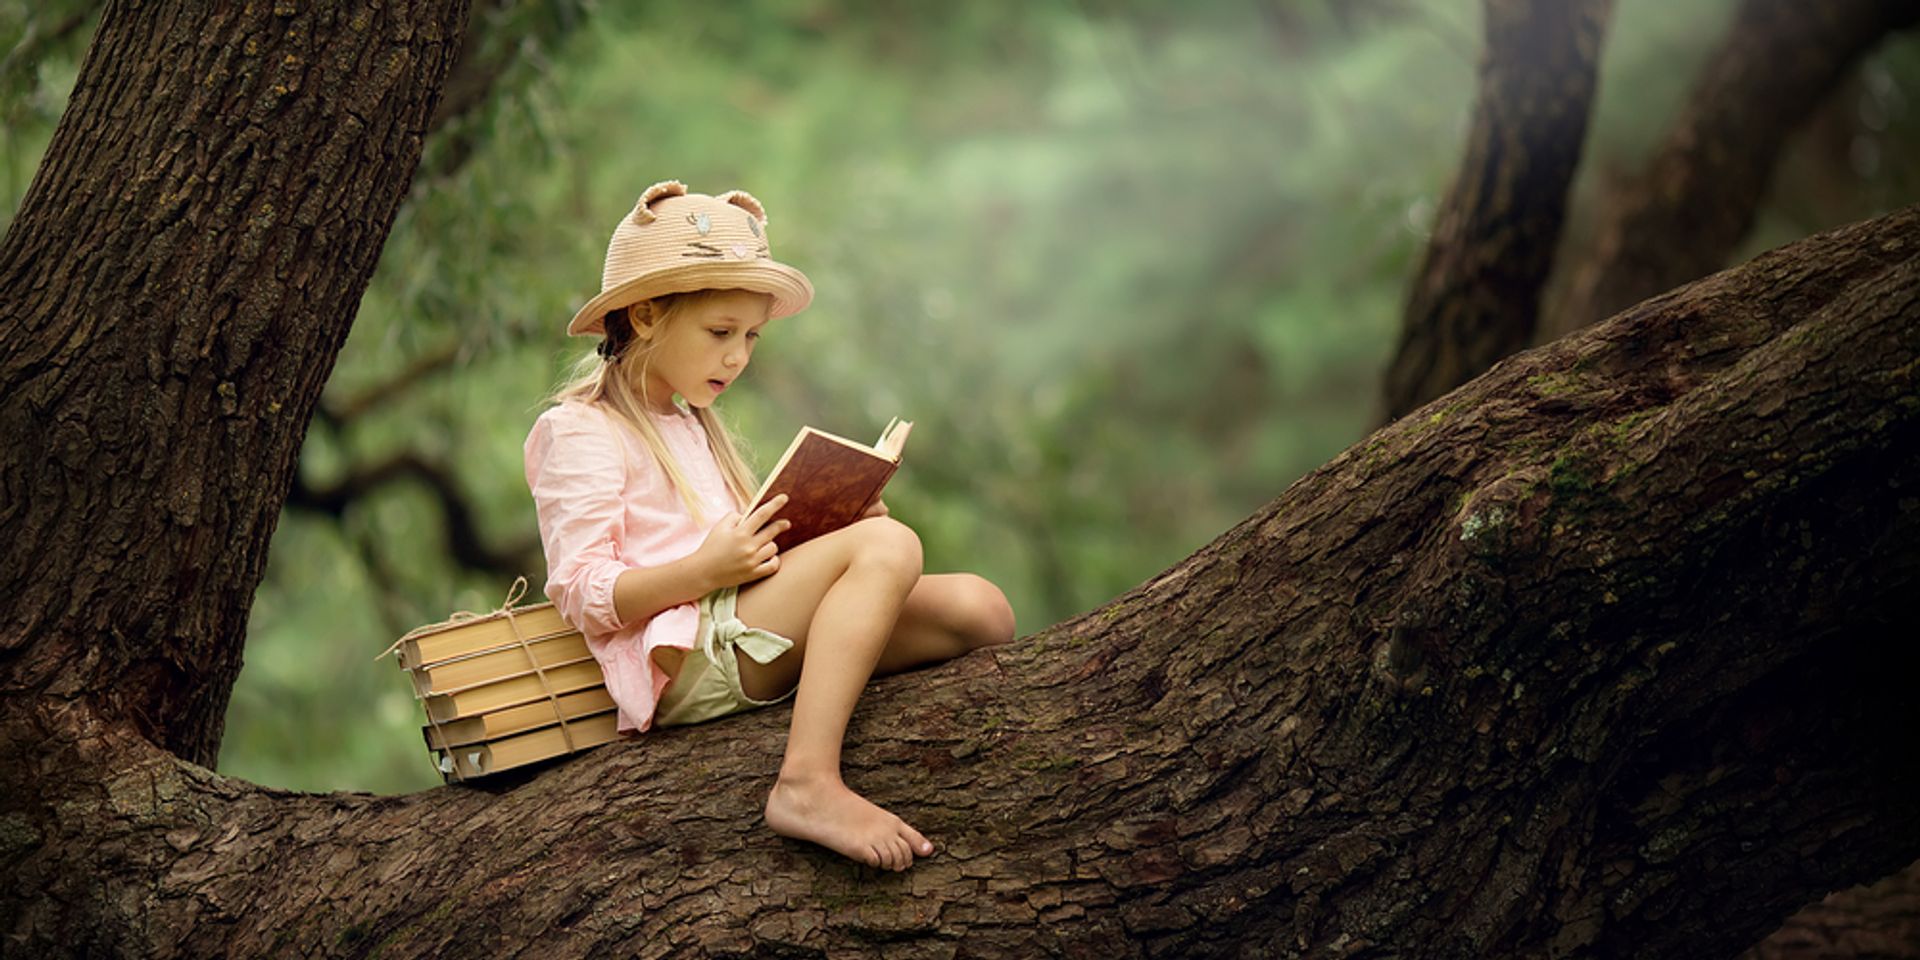 Mit olvasson nyáron a kisiskolás? Tippek a tanító nénitől